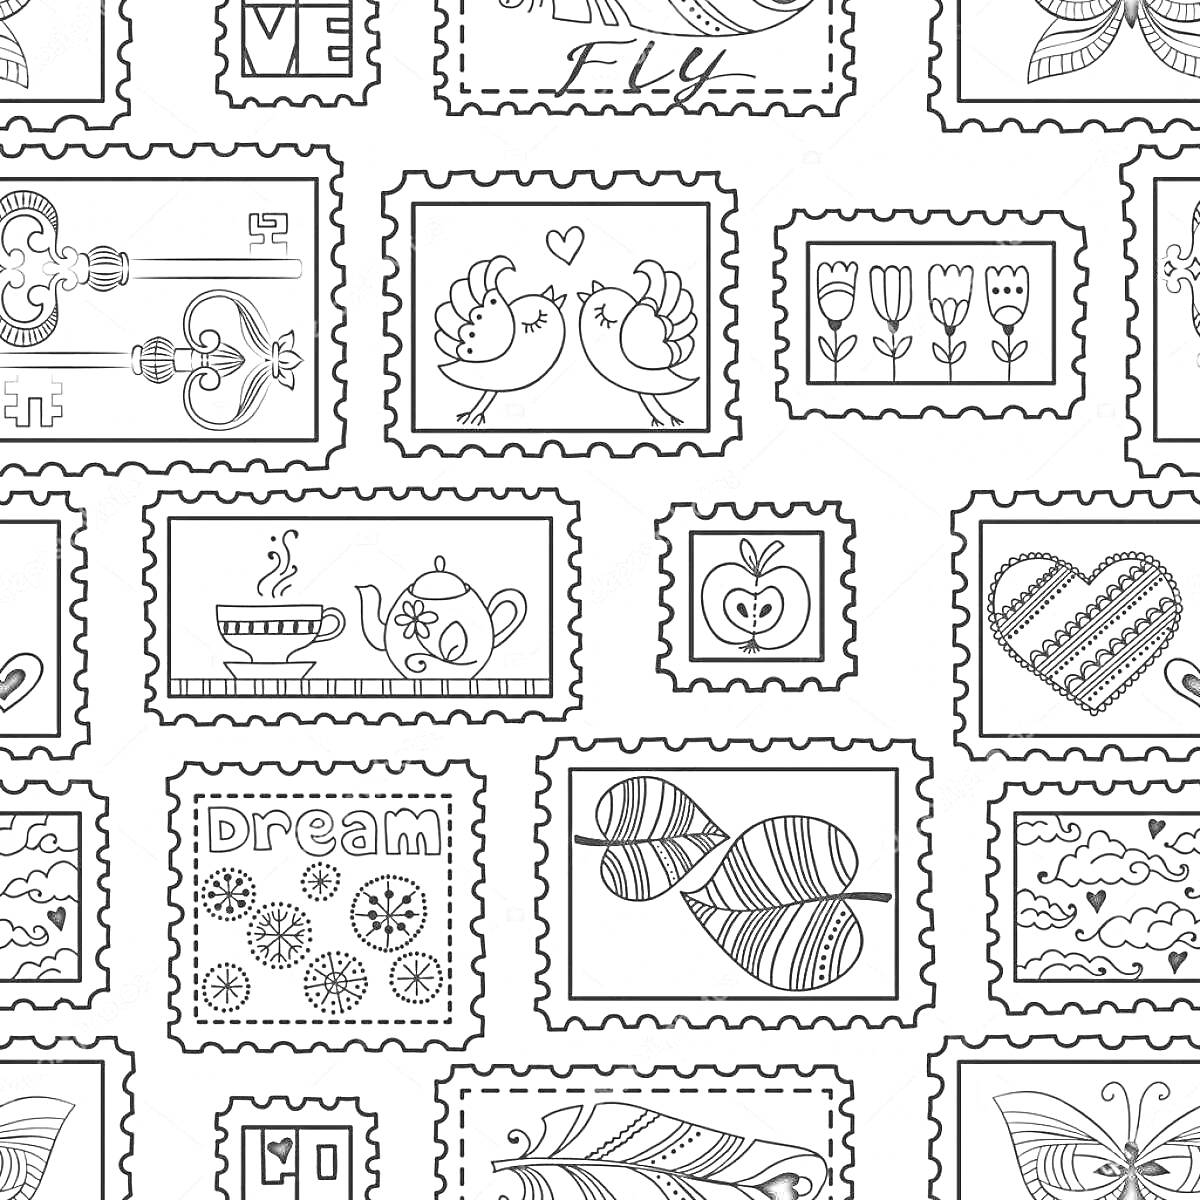 Раскраска Коллекция марок с рисунками: пара куриц, тюльпаны, сердце, чайник с чашкой чая, яблоко, керамические чашки, облака, геометрический узор, листья, бабочка